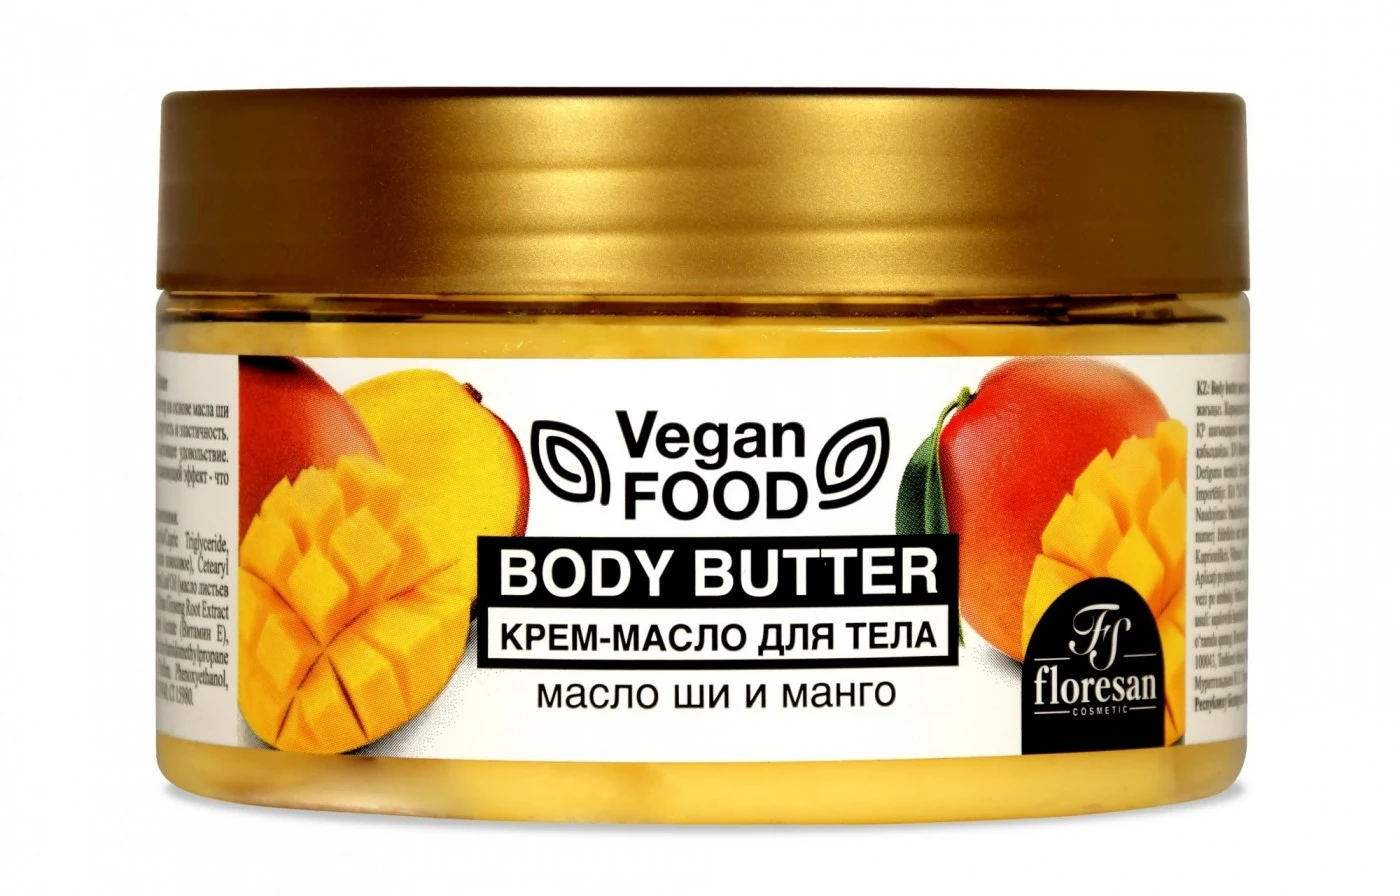 Floresan Vegan Food Крем-Масло для тела (масло ШИ и МАНГО) 250мл, арт.Ф-712